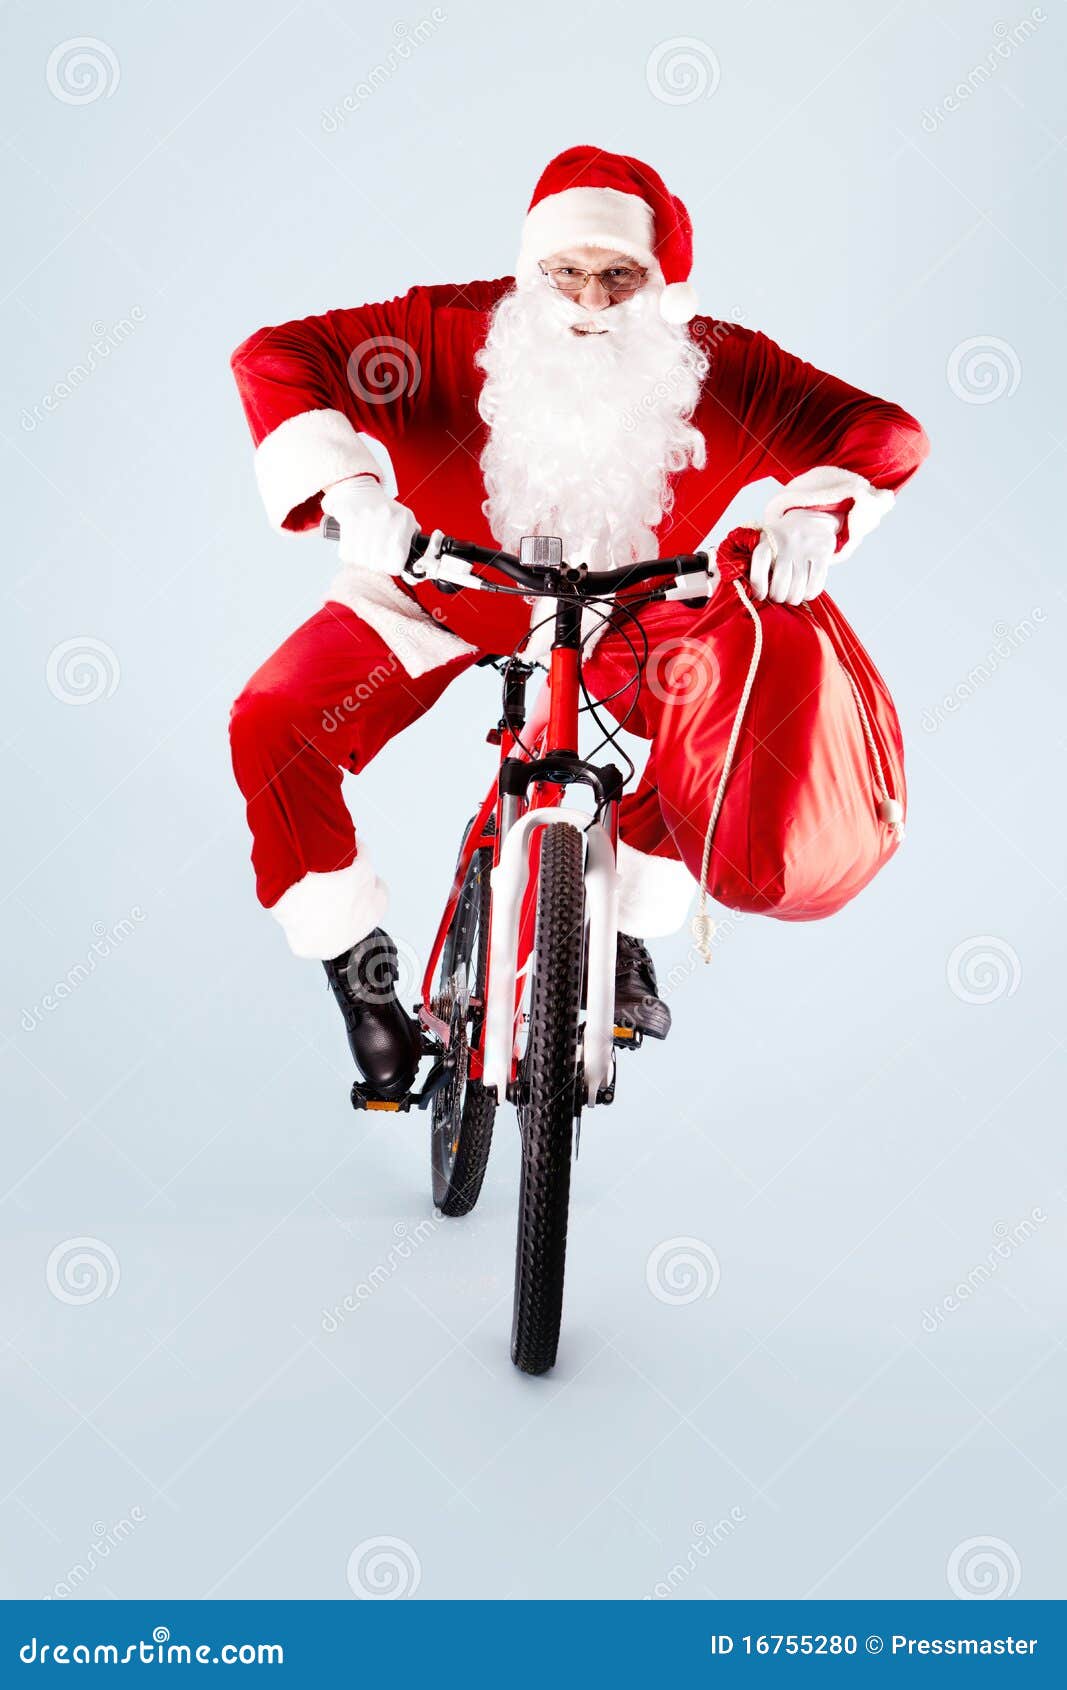 Kerstman Op Fiets Stock Foto. Image Of Viering, Menselijk - 16755280